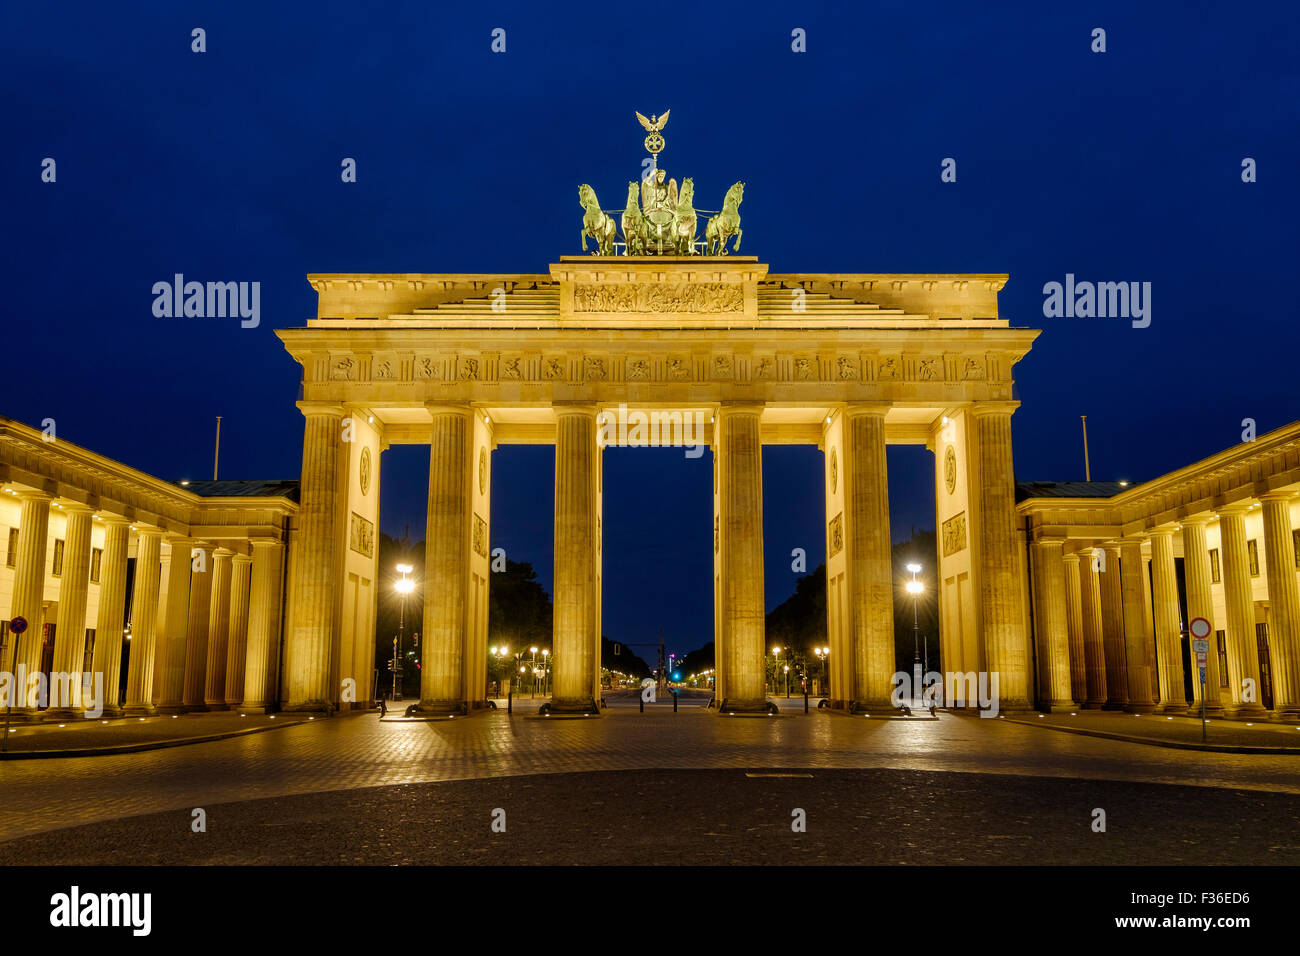 La porte de Brandebourg / Brandenburger Tor Berlin, Allemagne éclairée par des projecteurs dans les premières heures du matin. Banque D'Images